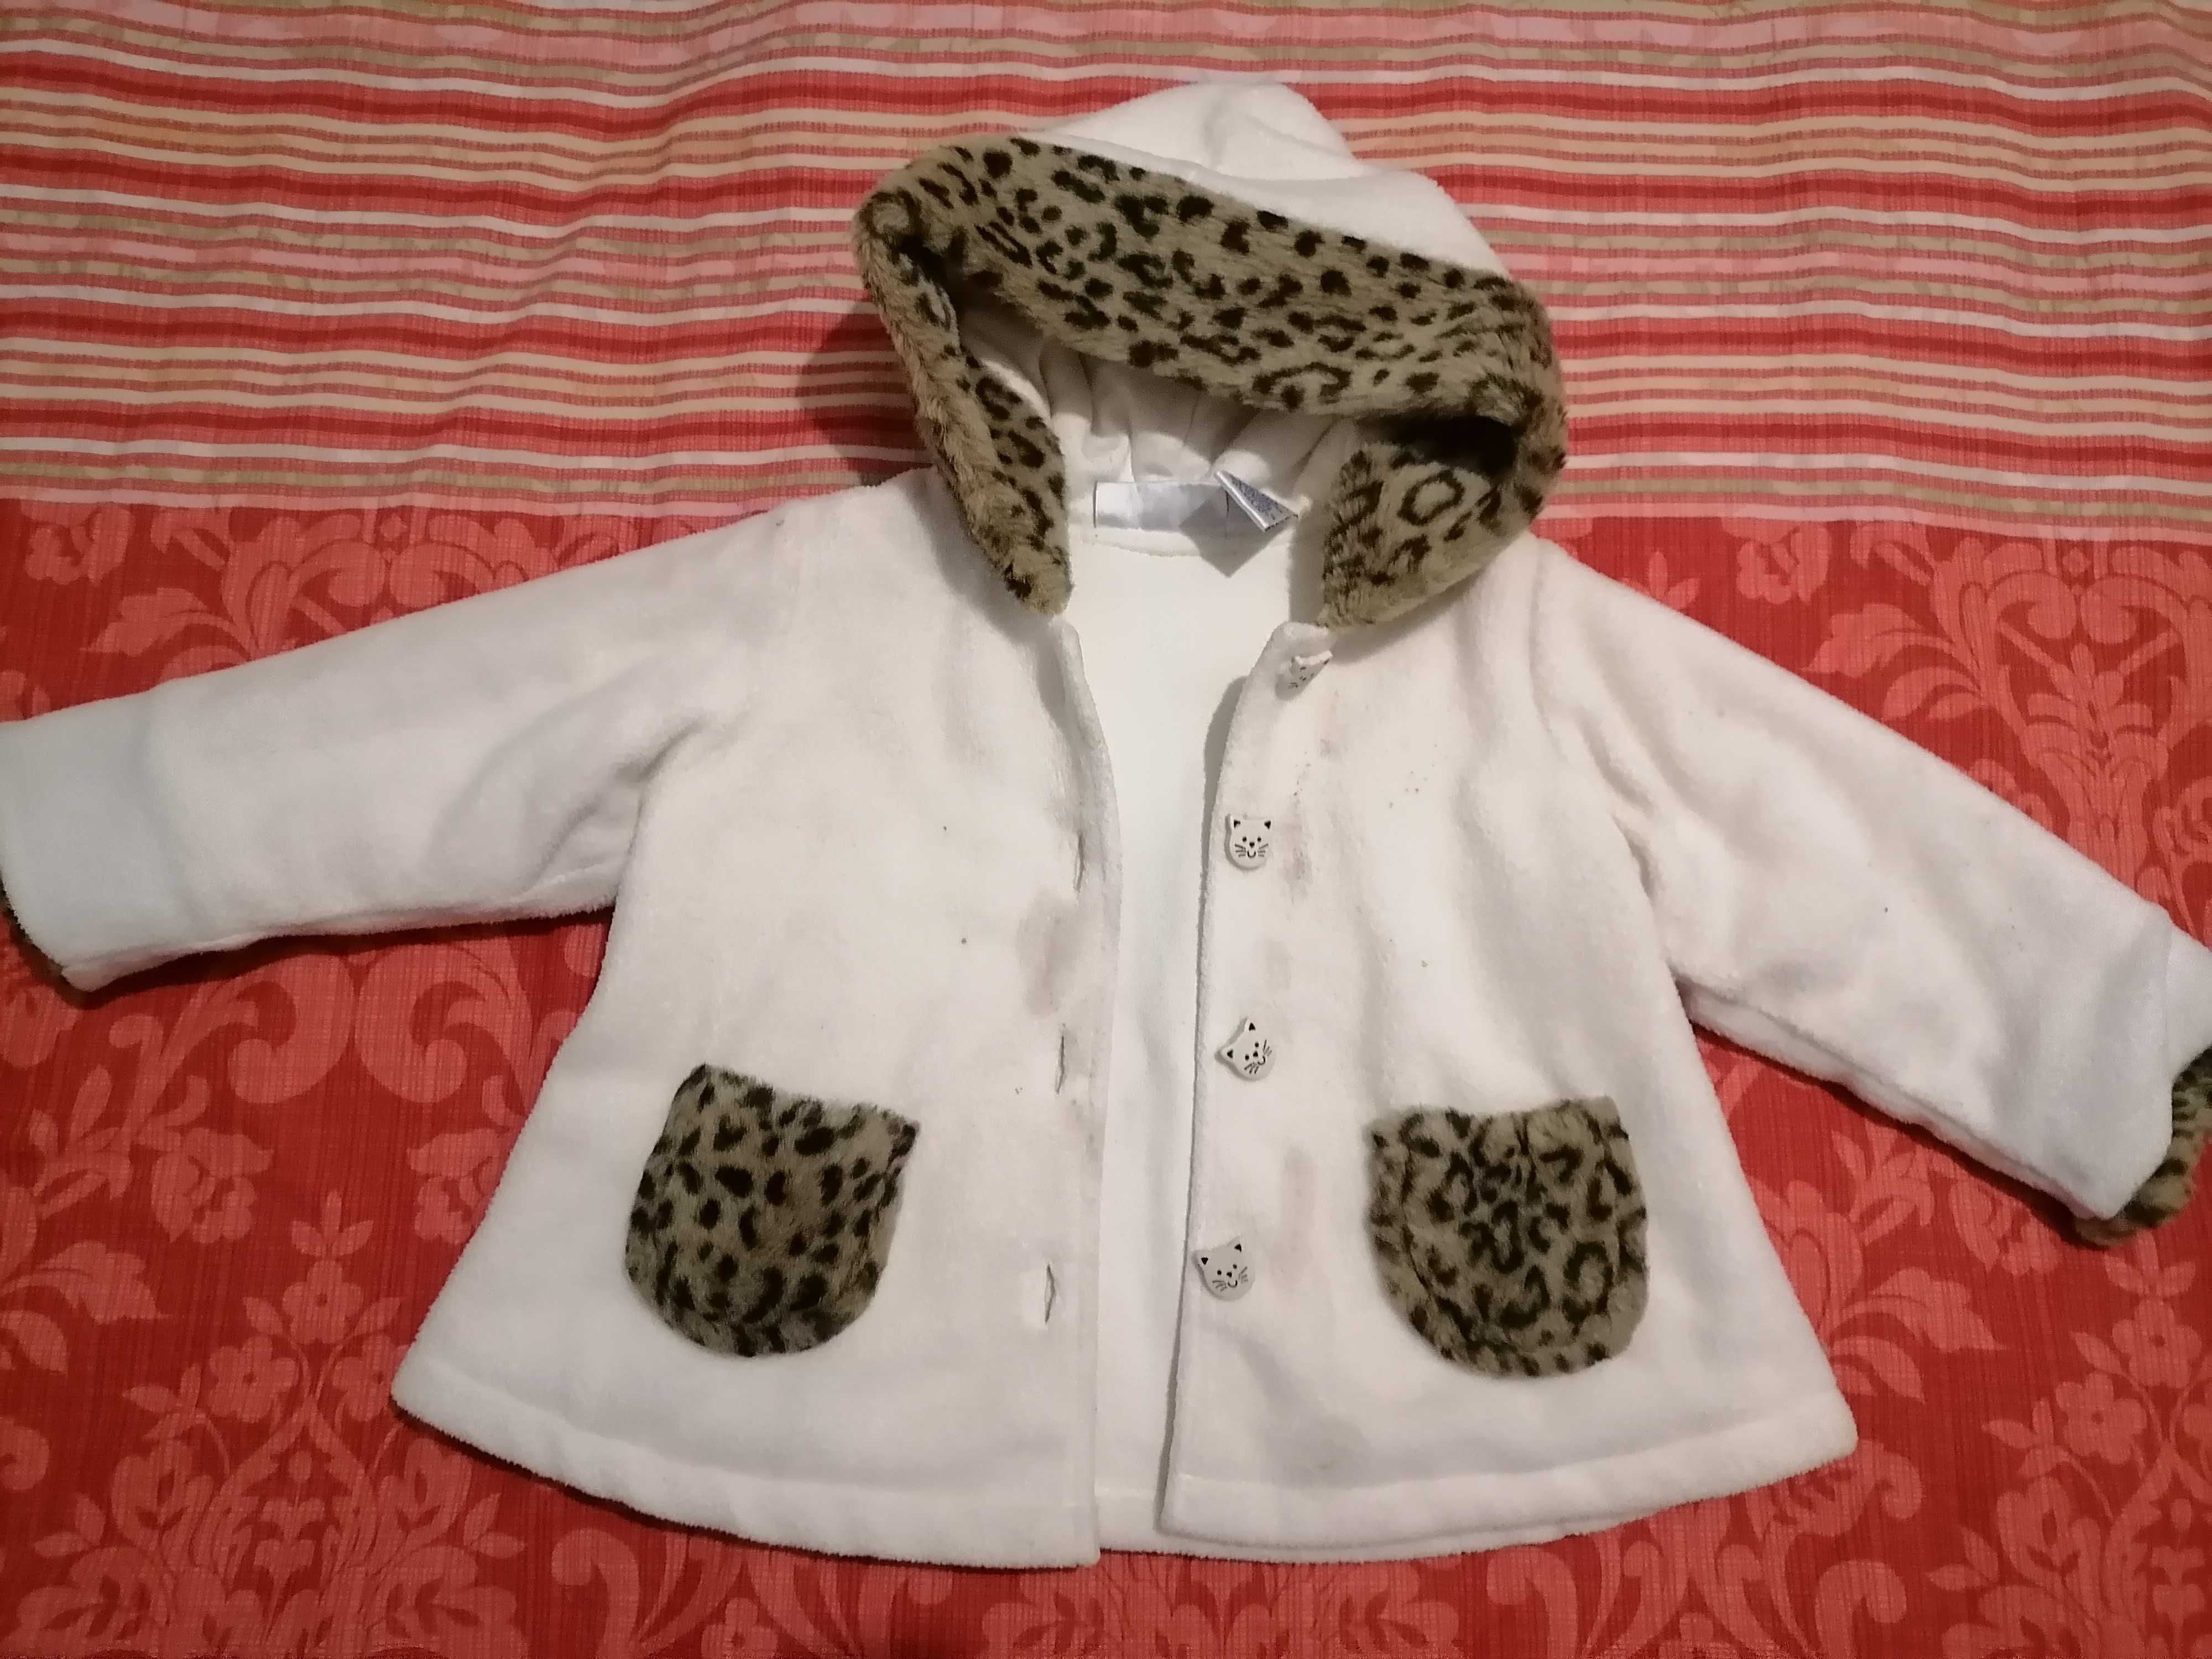 Płaszcz, kurtka dla dziecka, rozmiar 80, WYSYŁKA